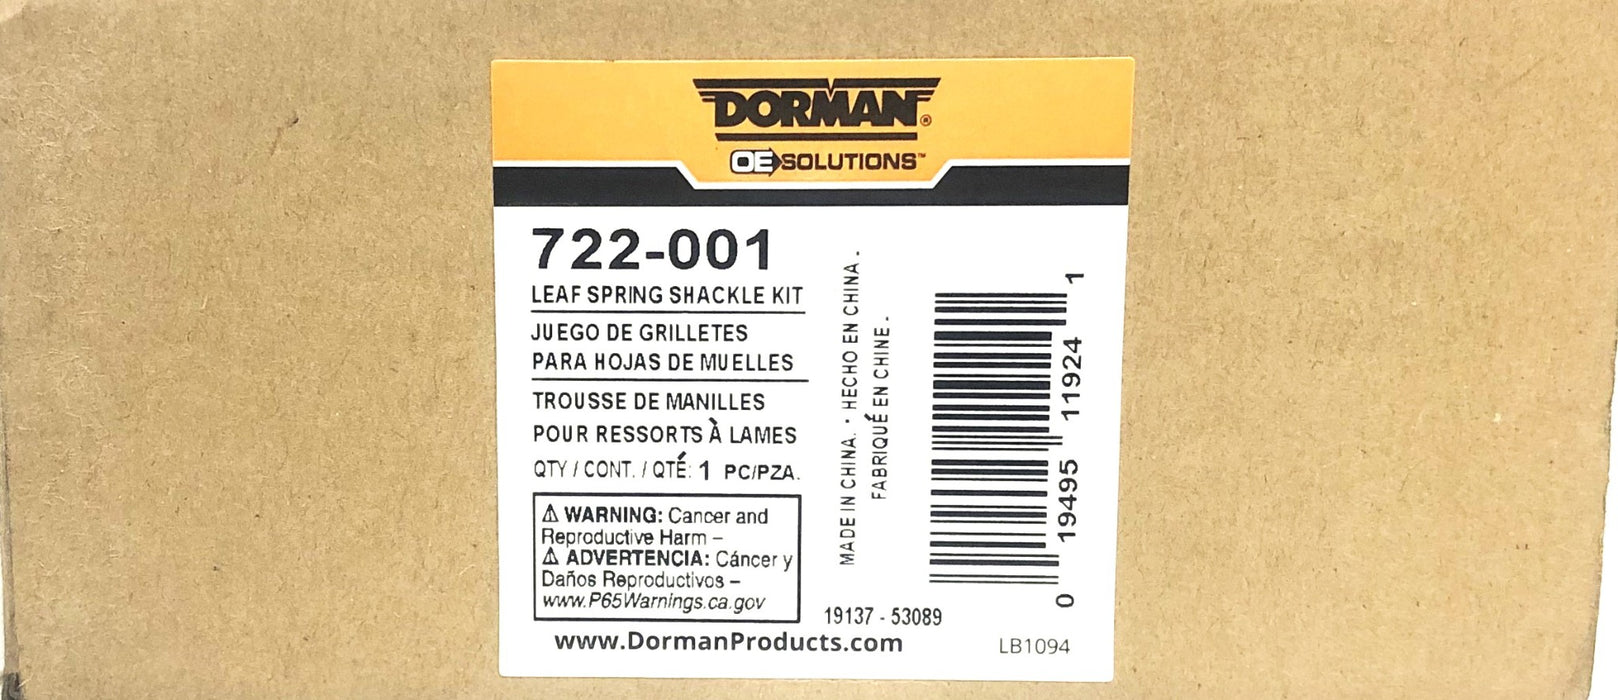 Dorman Leaf Spring Shackle Kit 722-001 [Lot of 2] NOS